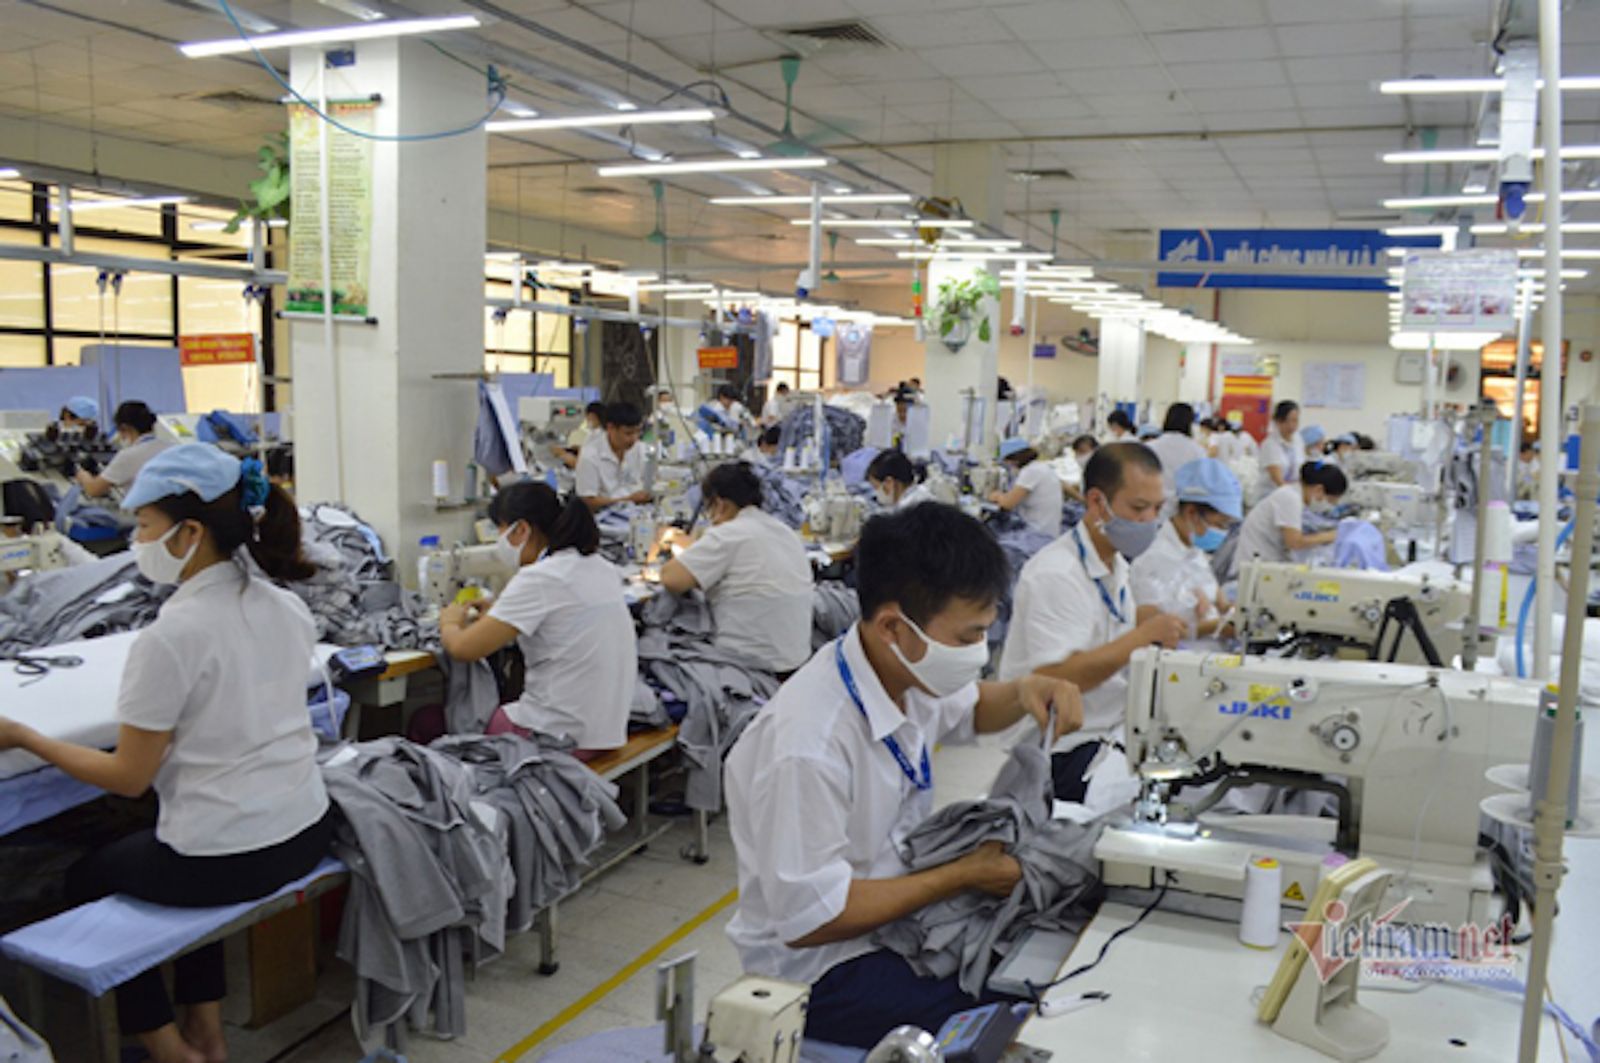 sau 05 năm thực hiện đề án (2018-2022), UBND Thành phố đã công nhận tổng số 196 sản phẩm đạt danh hiệu sản phẩm công nghiệp chủ lực thành phố Hà Nội.